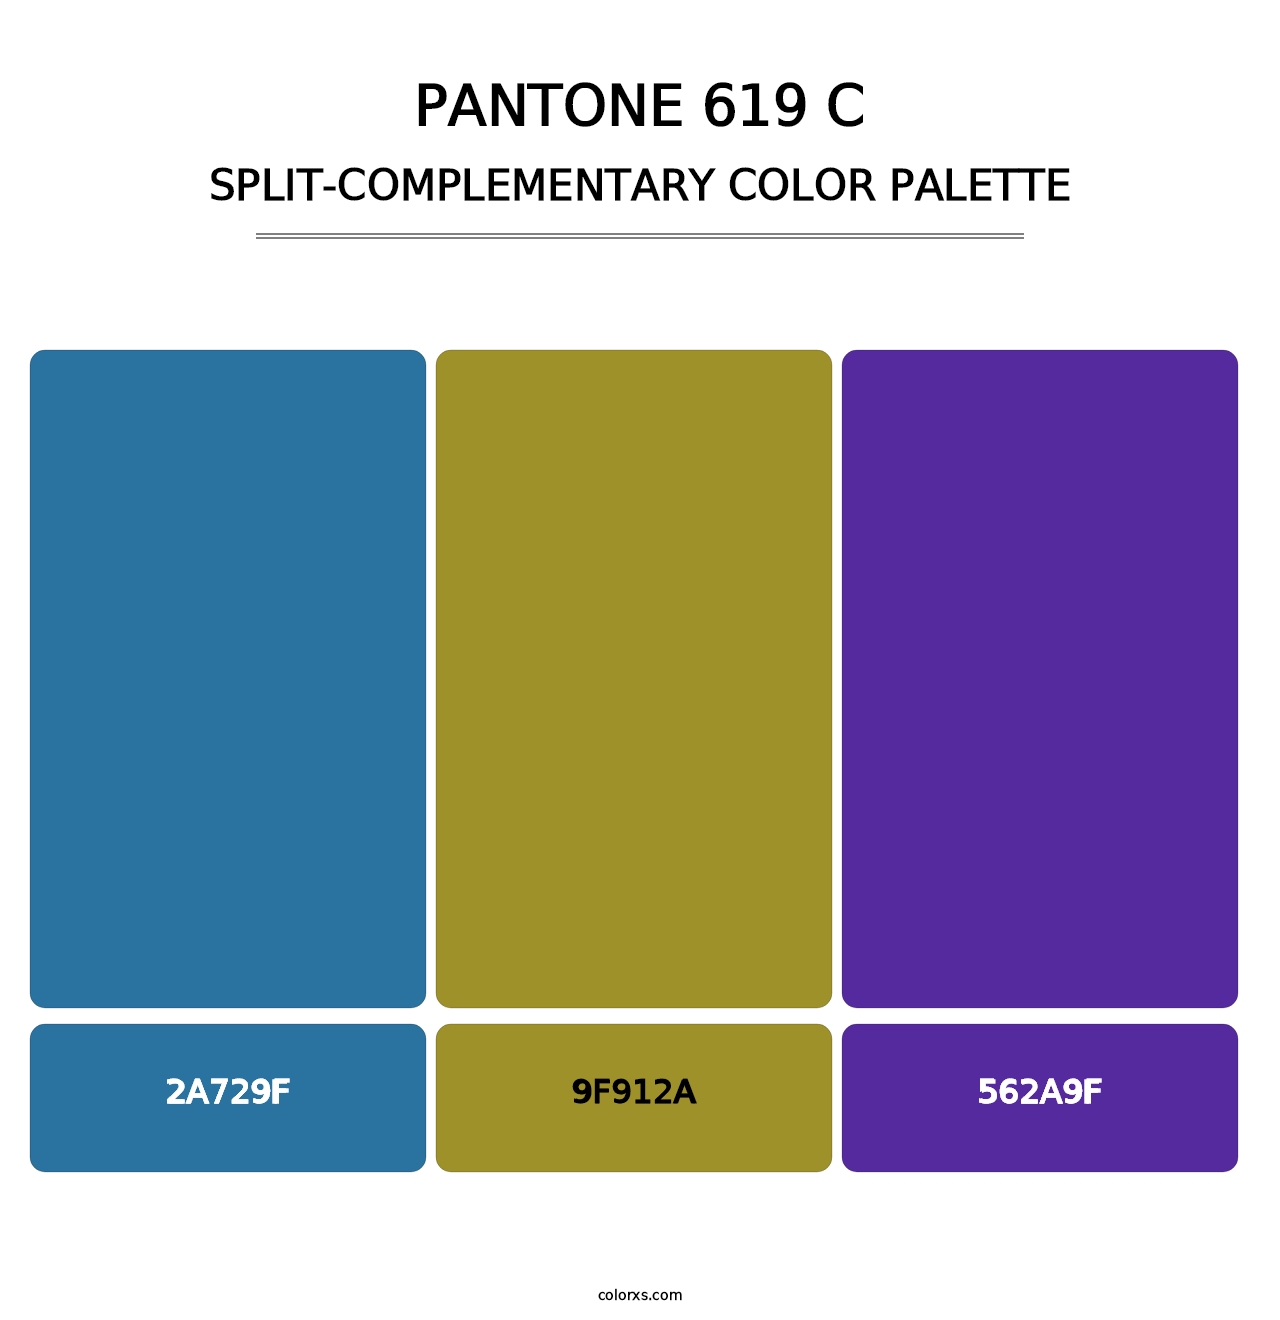 PANTONE 619 C - Split-Complementary Color Palette